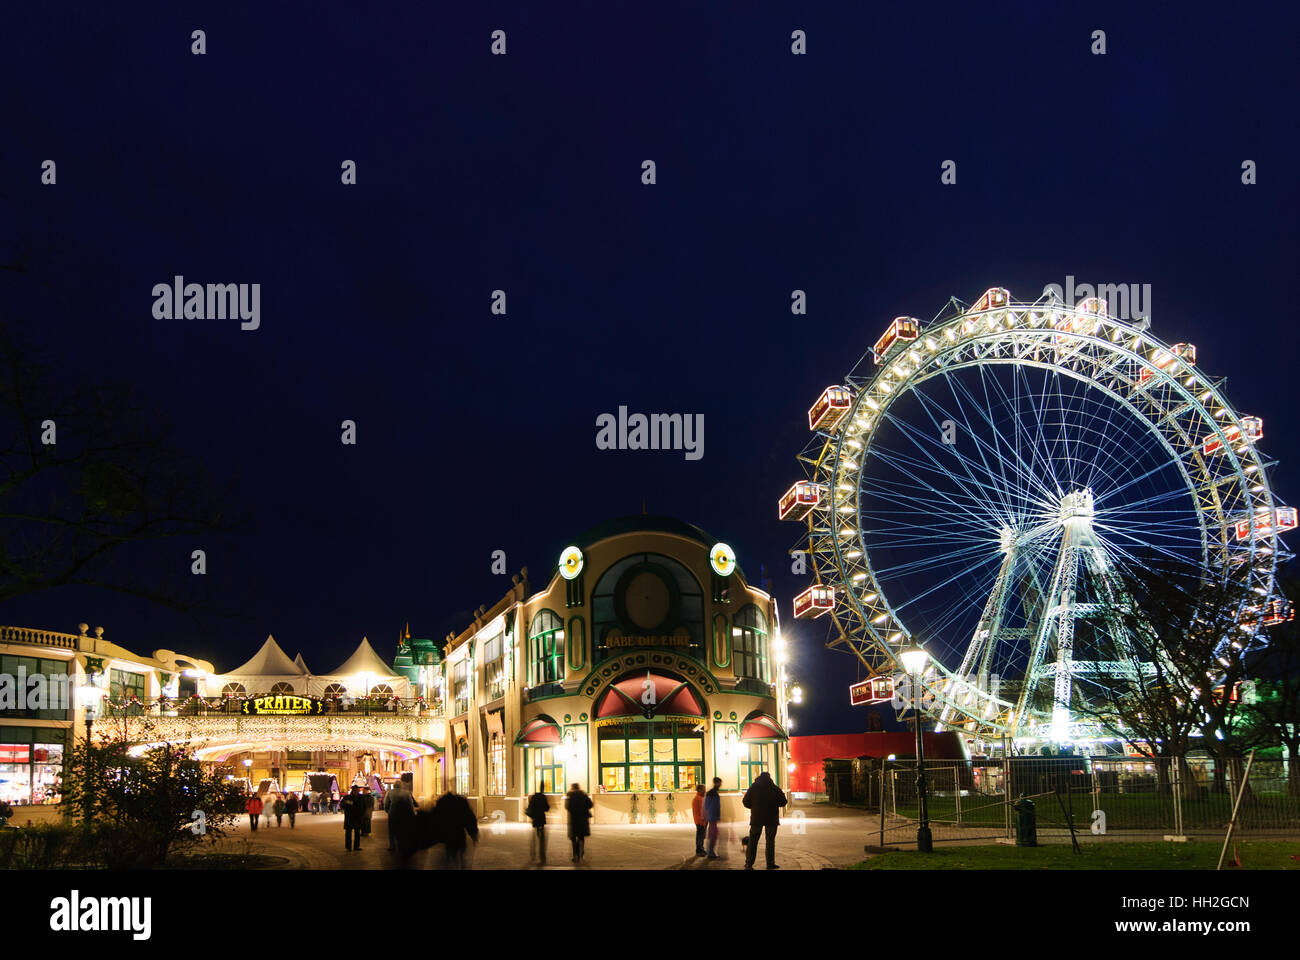 Wien, Vienna: ingresso al Prater con la ruota panoramica Ferris in corrispondenza del tempo di Avvento, 02., Wien, Austria Foto Stock